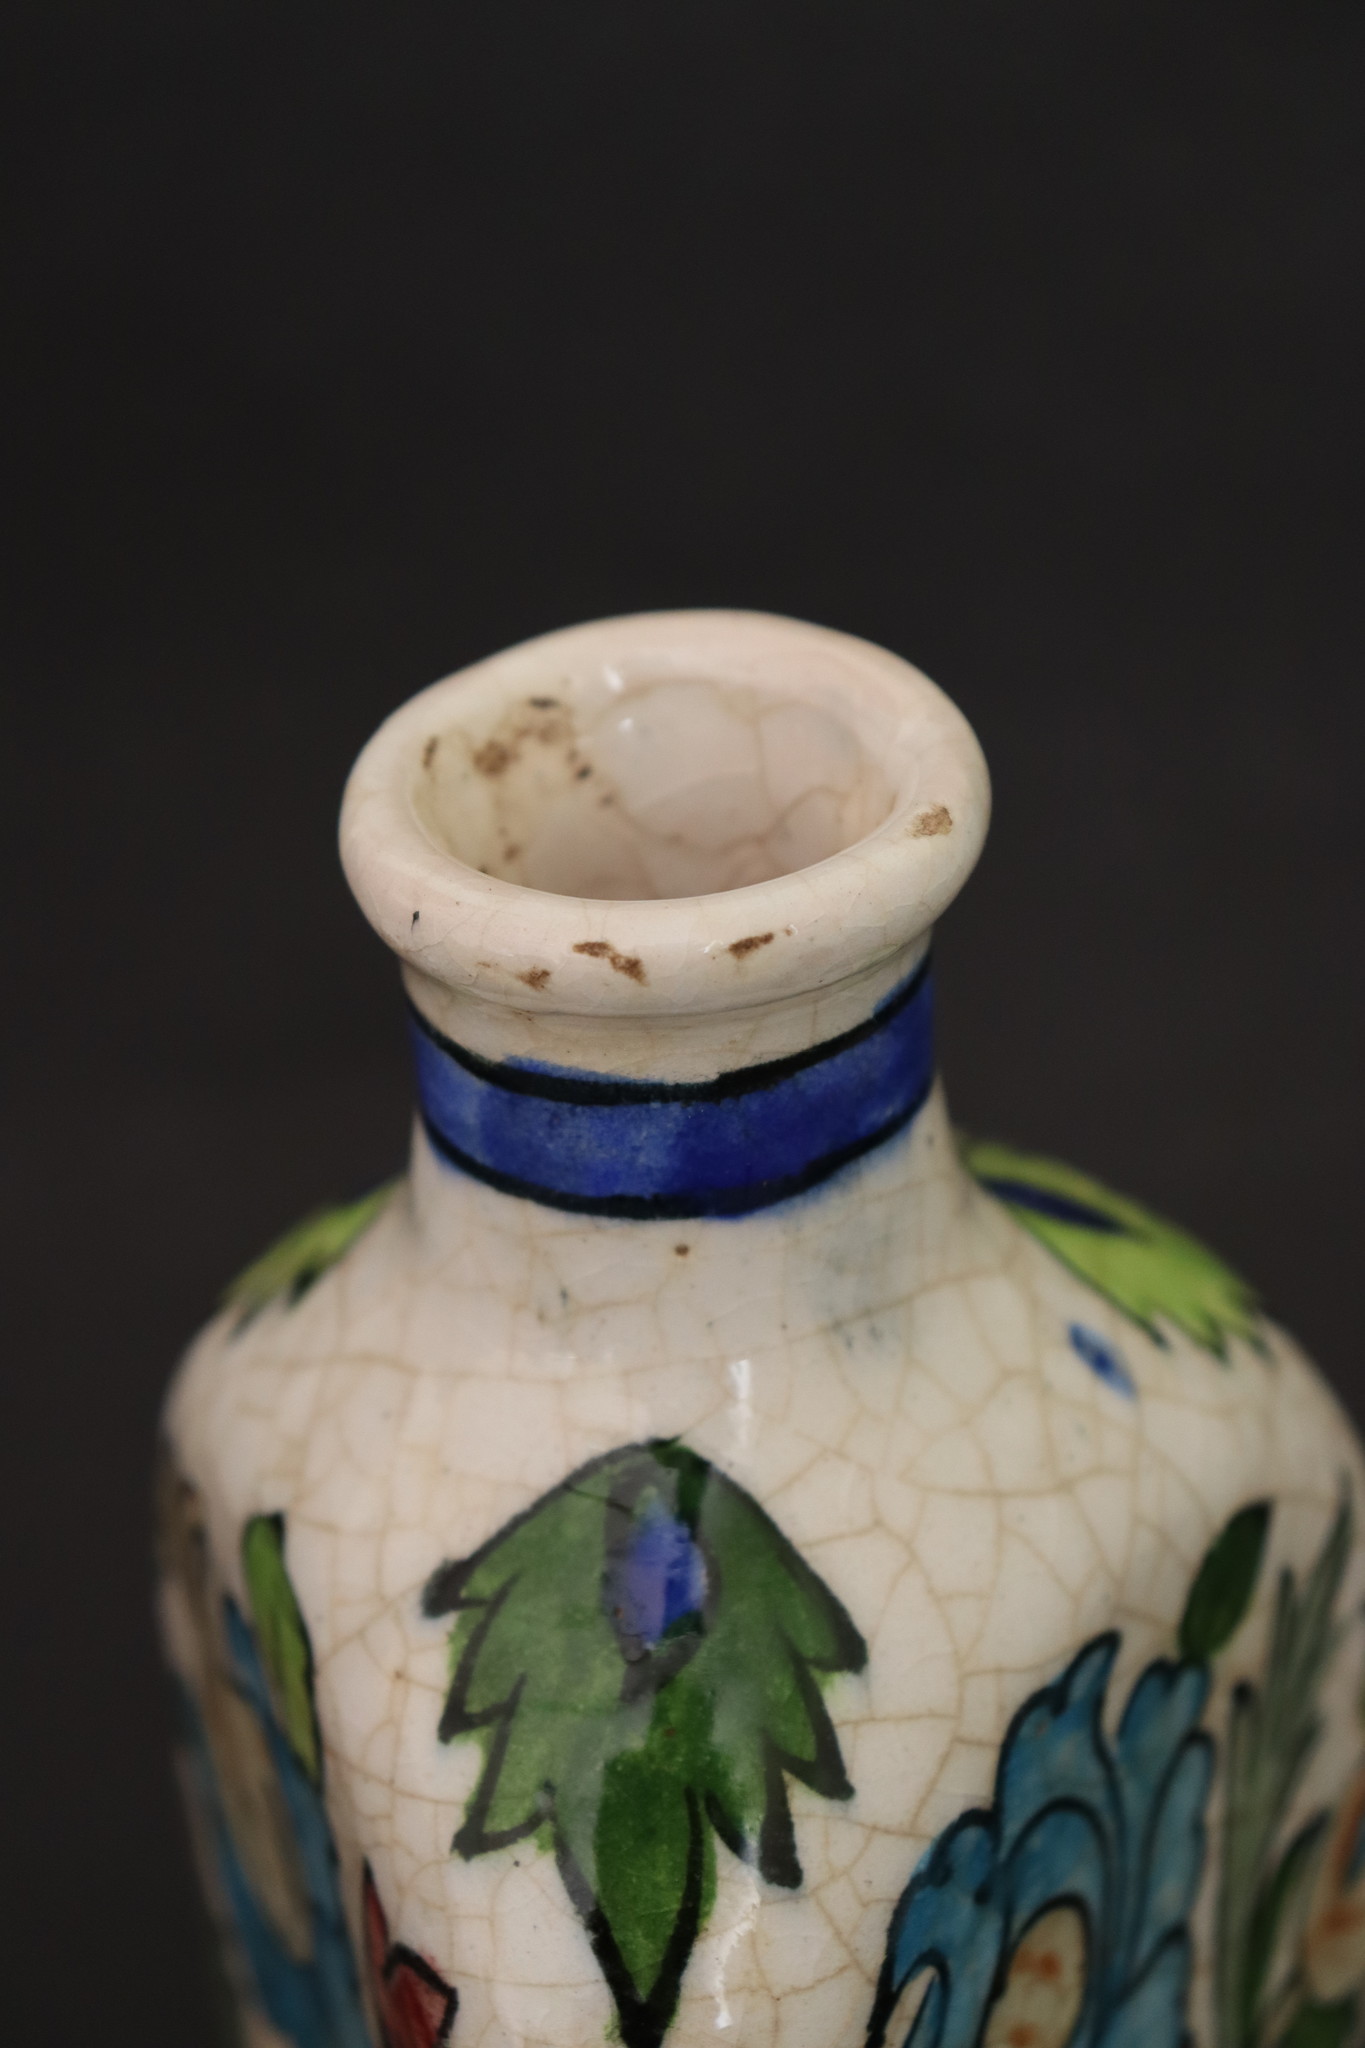 Vintage Hand Painted and Glazed islamic triangular Ceramic Vase Bottle No:10